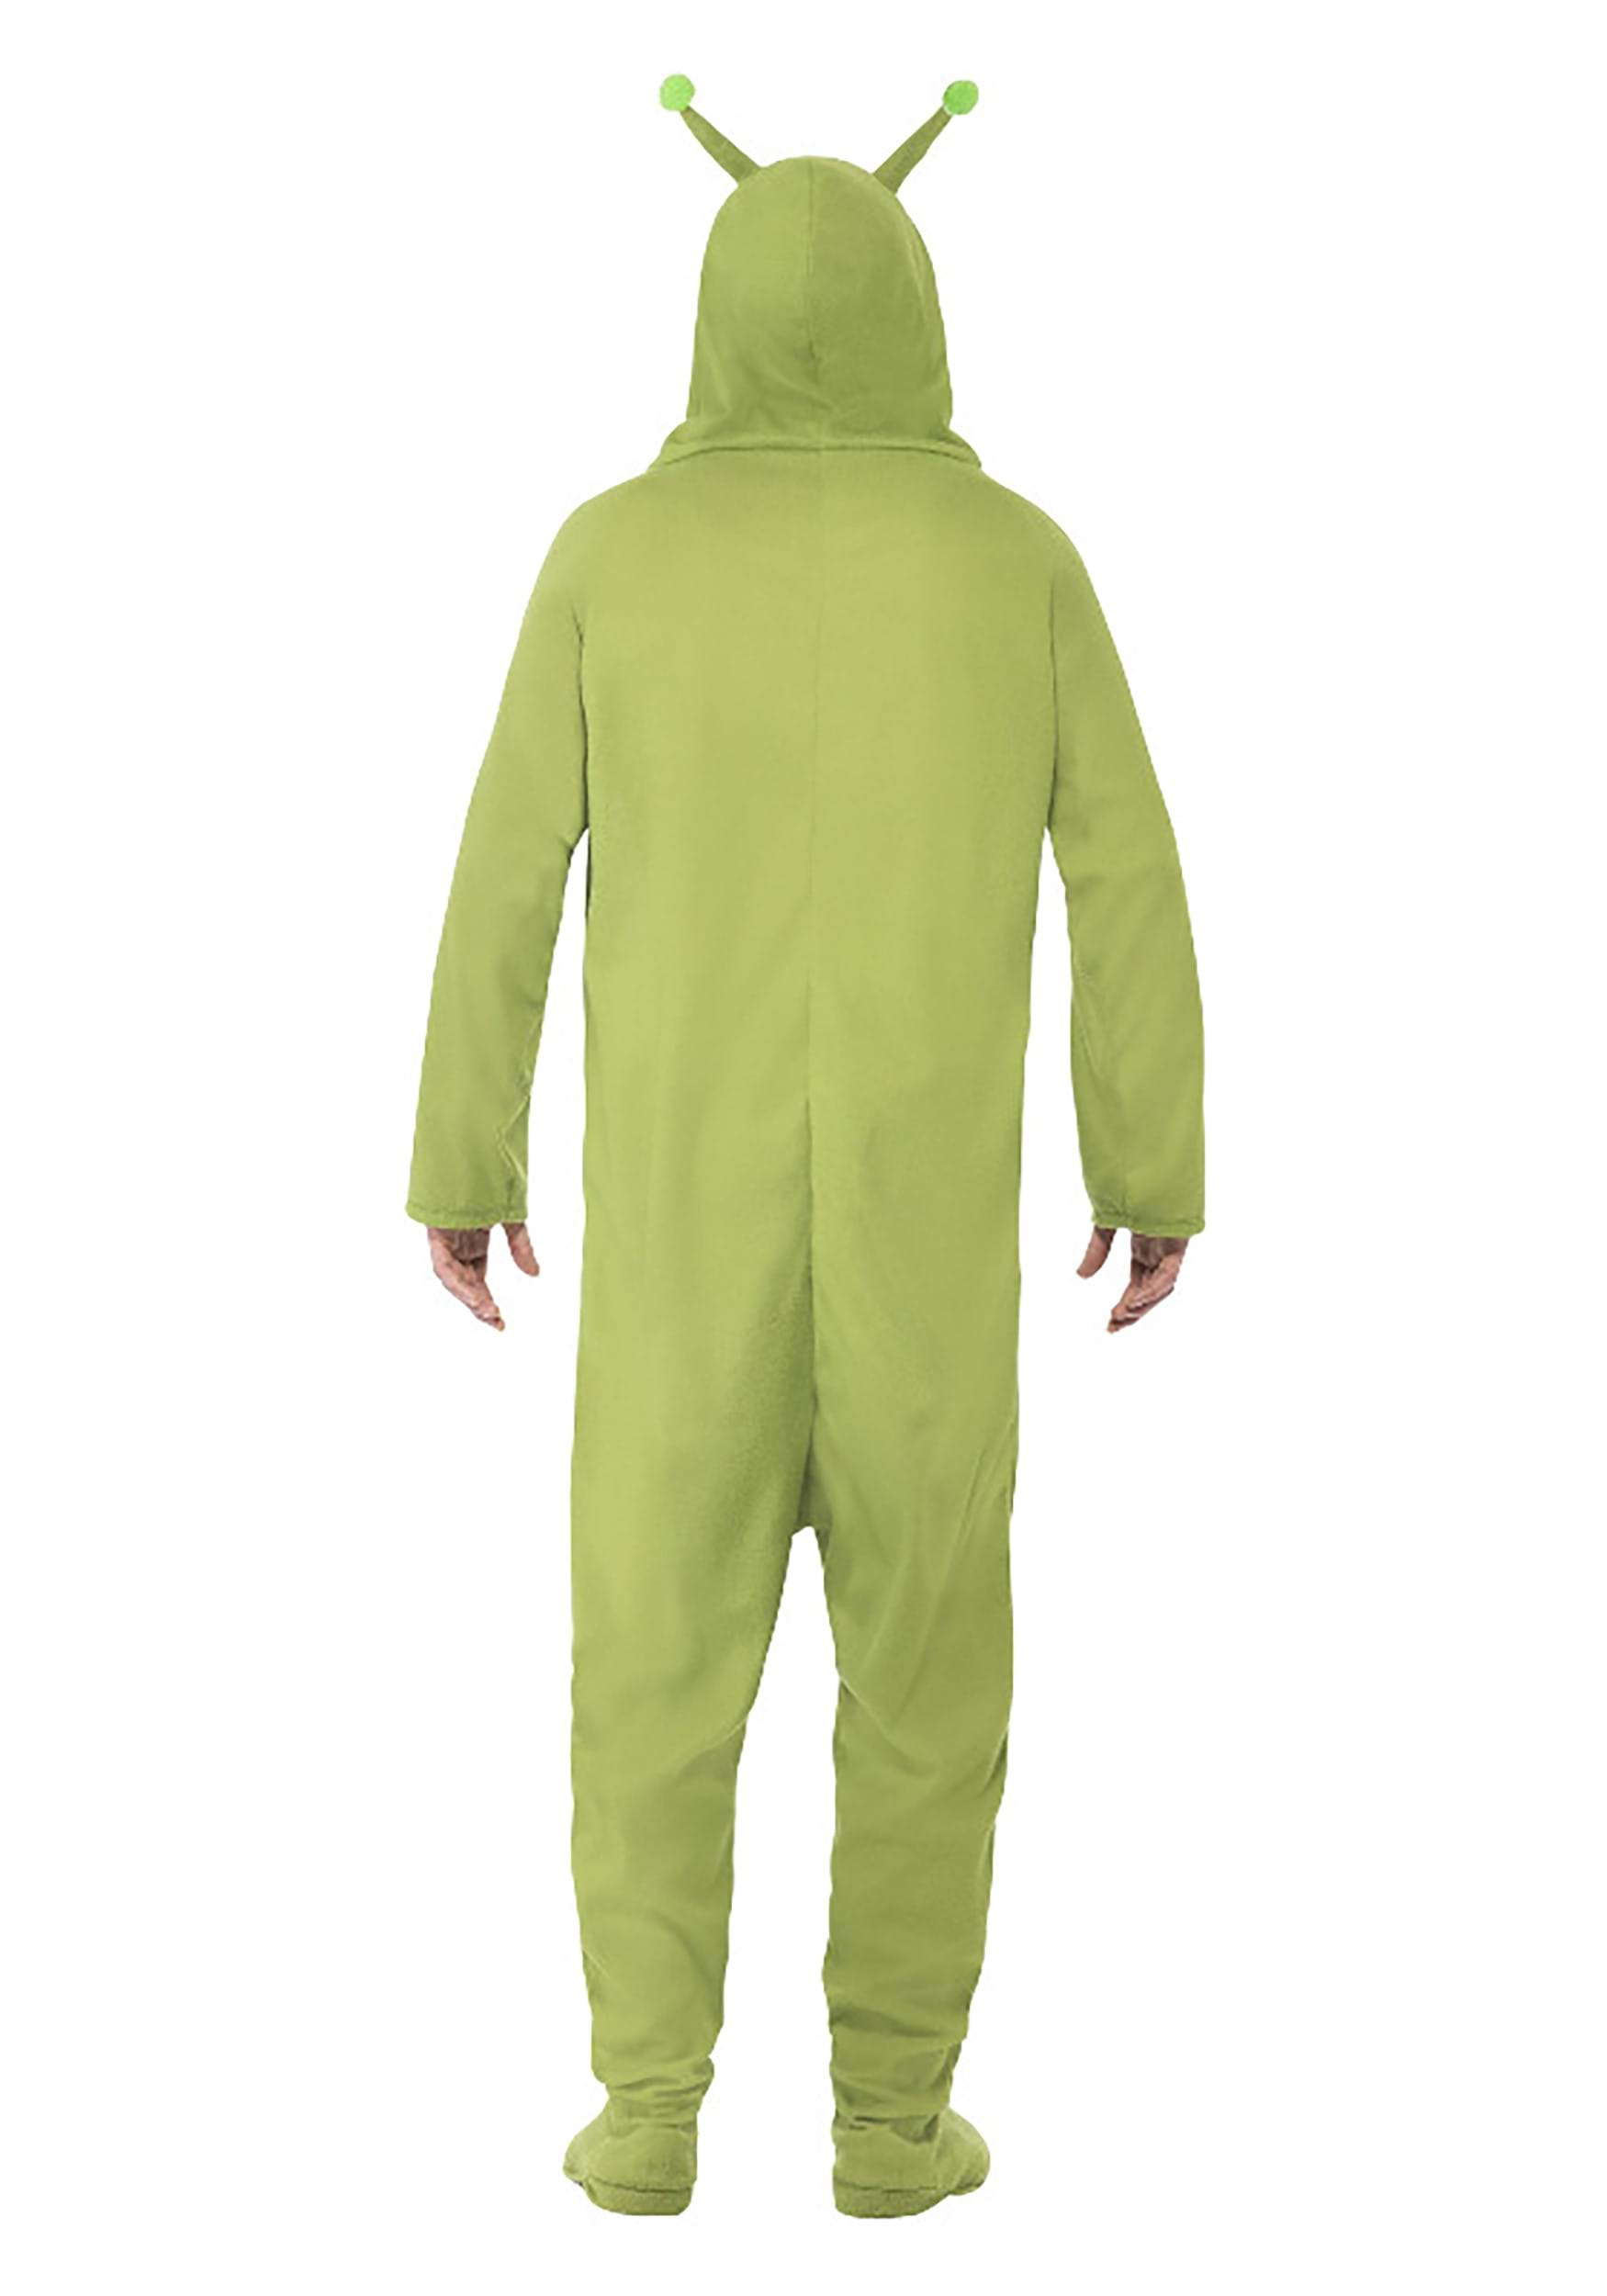 Green Alien Adult Jumpsuit Fancy Dress Costume